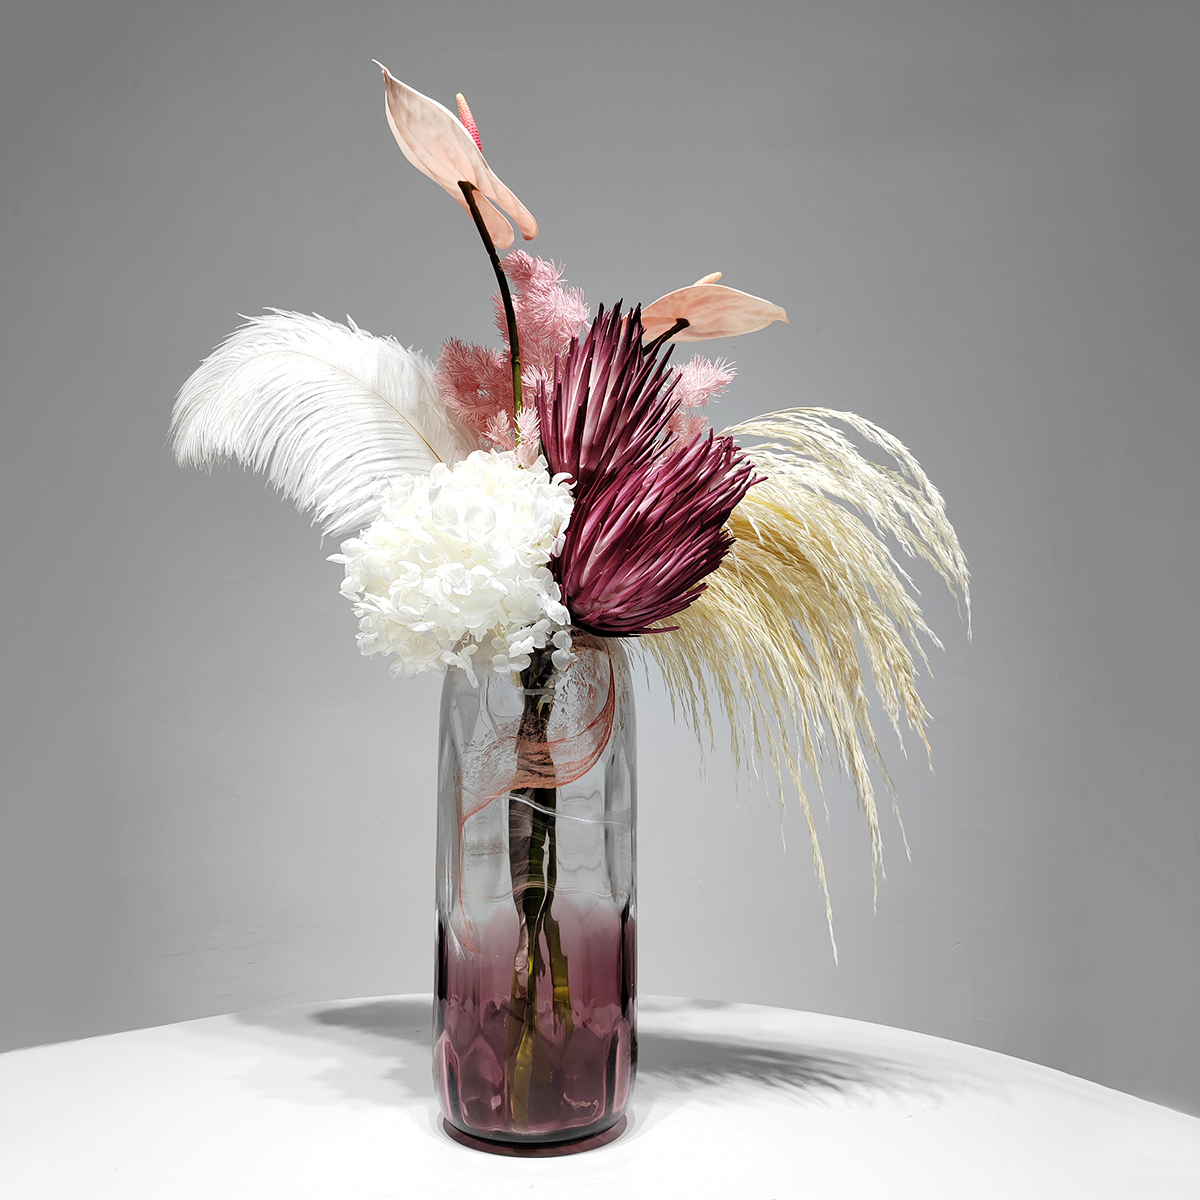 モダンライト豪華な雰囲気模擬花瓶装飾フェイクフラワー花装飾寝室リビングルームテーブル装飾